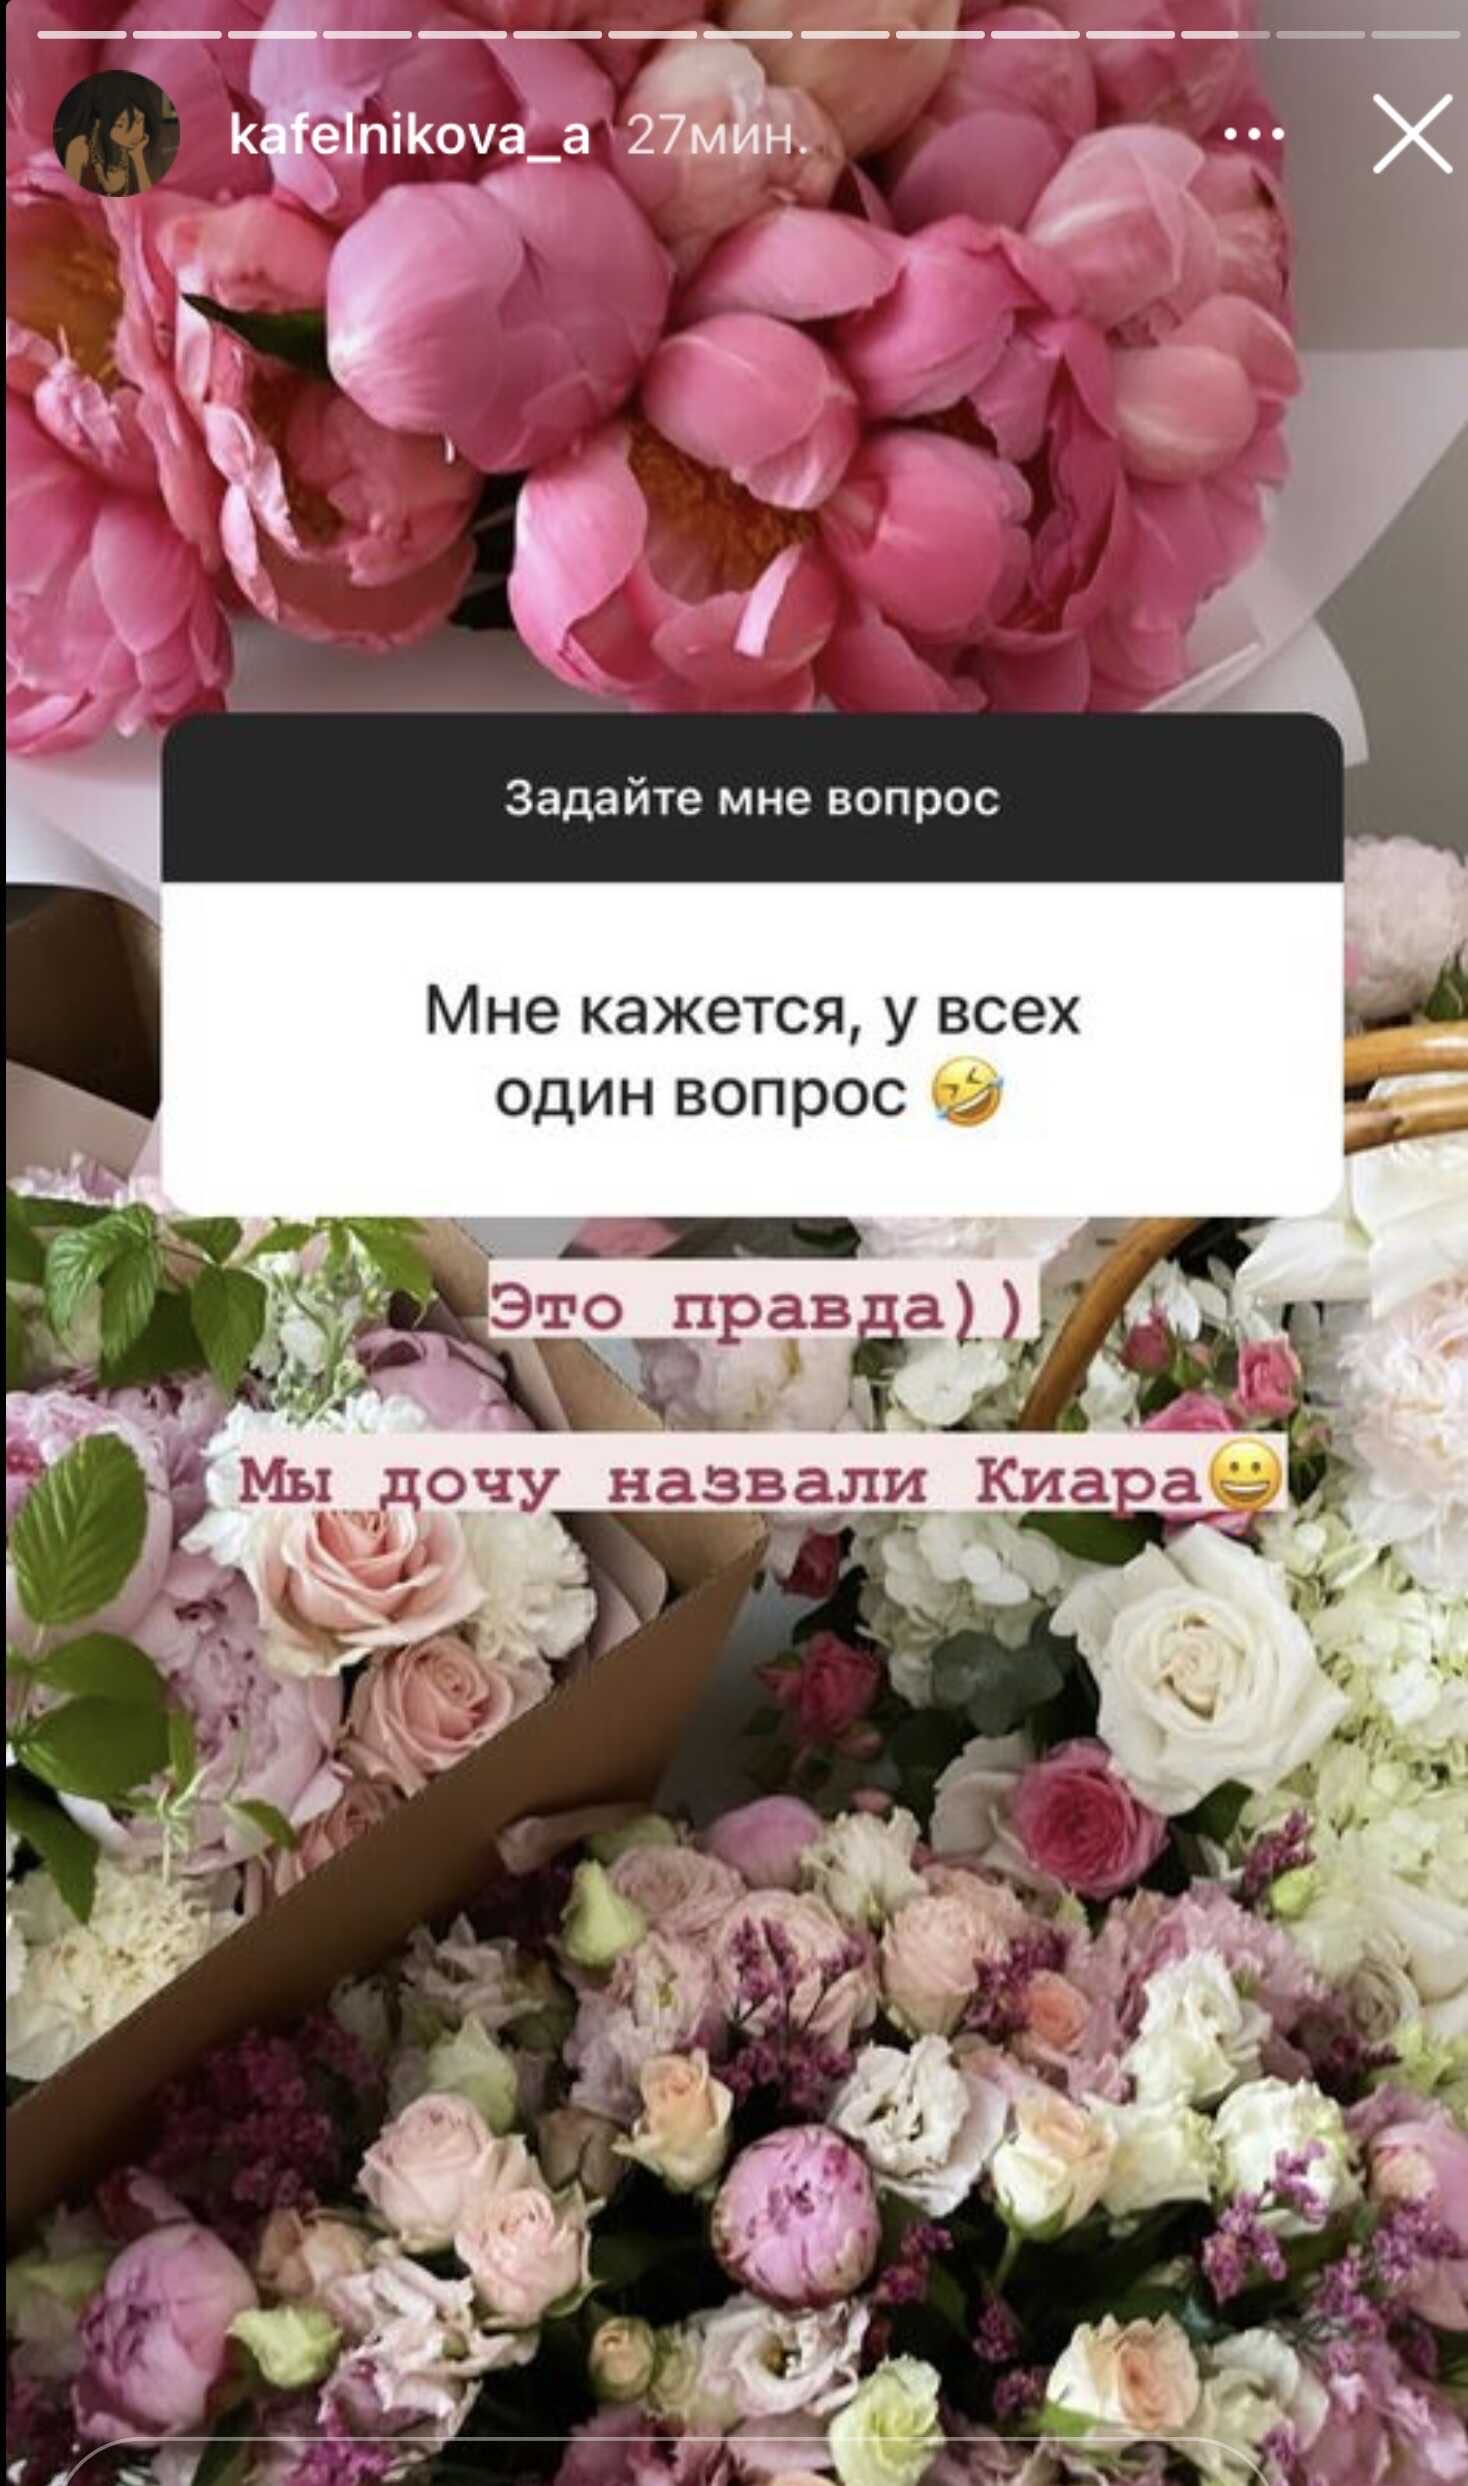 Алеся Кафельникова озвучила пол и необычное имя своего ребёнка